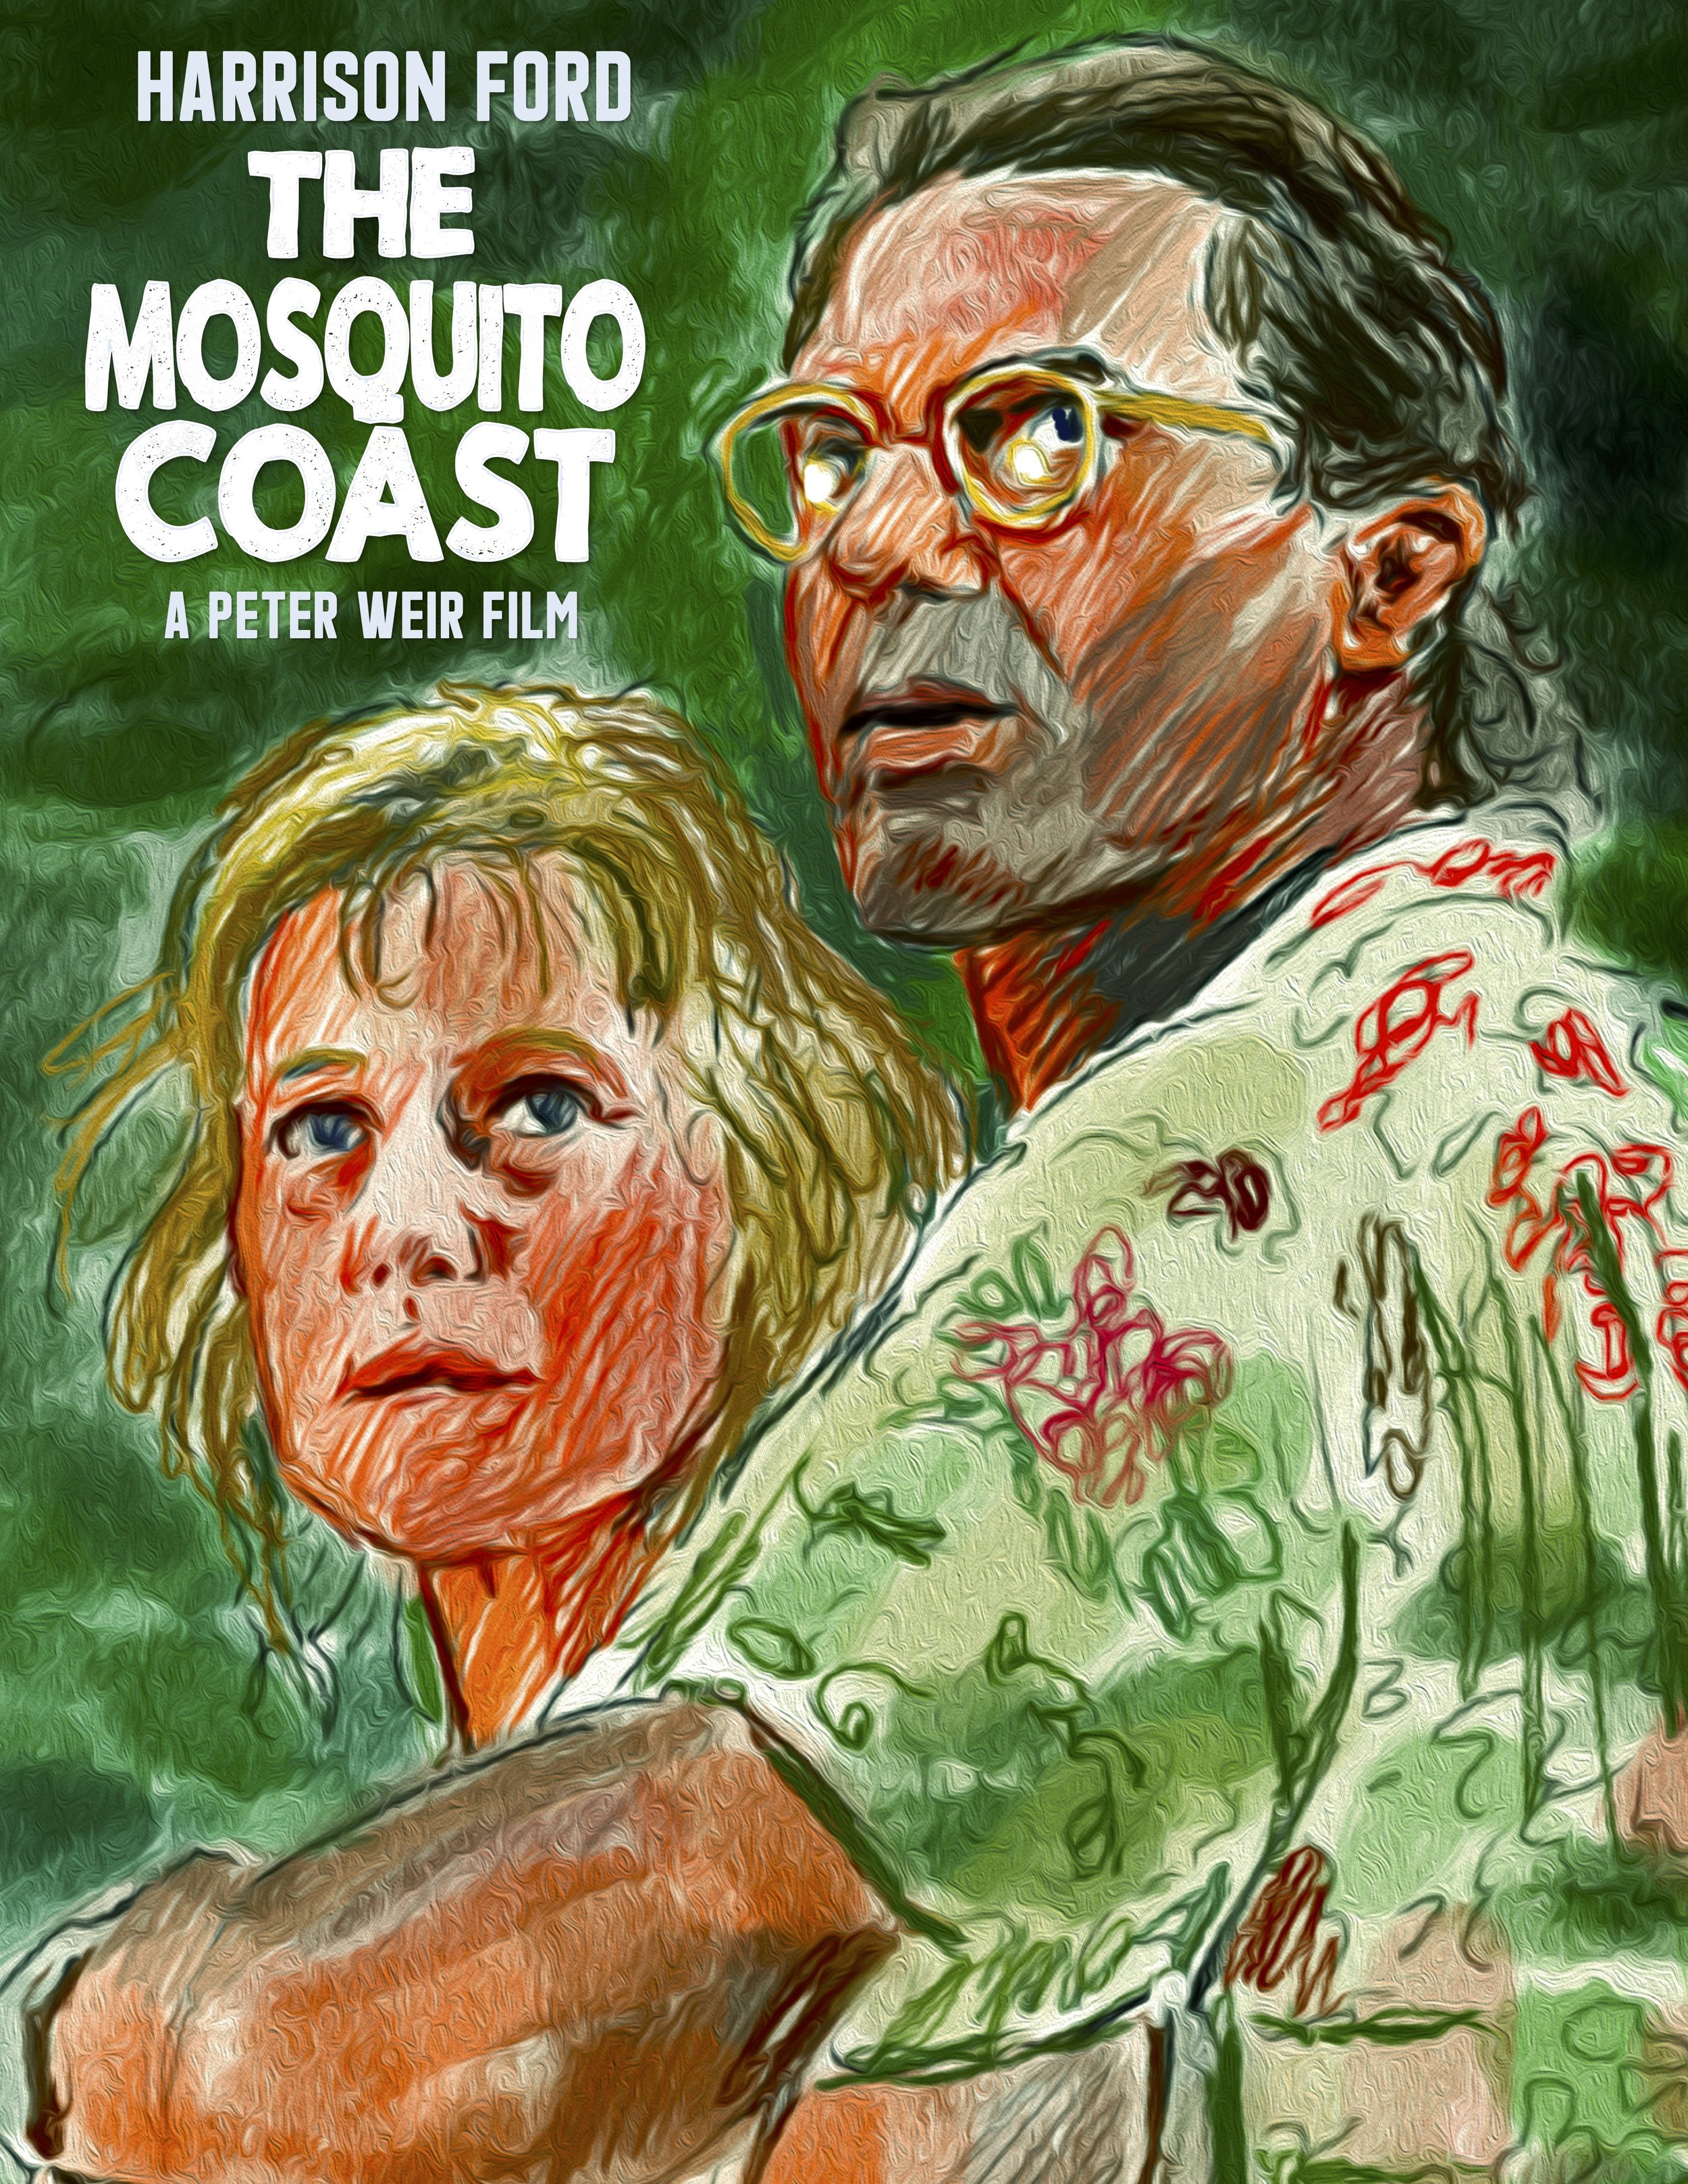 The Mosquito Coast (1986)